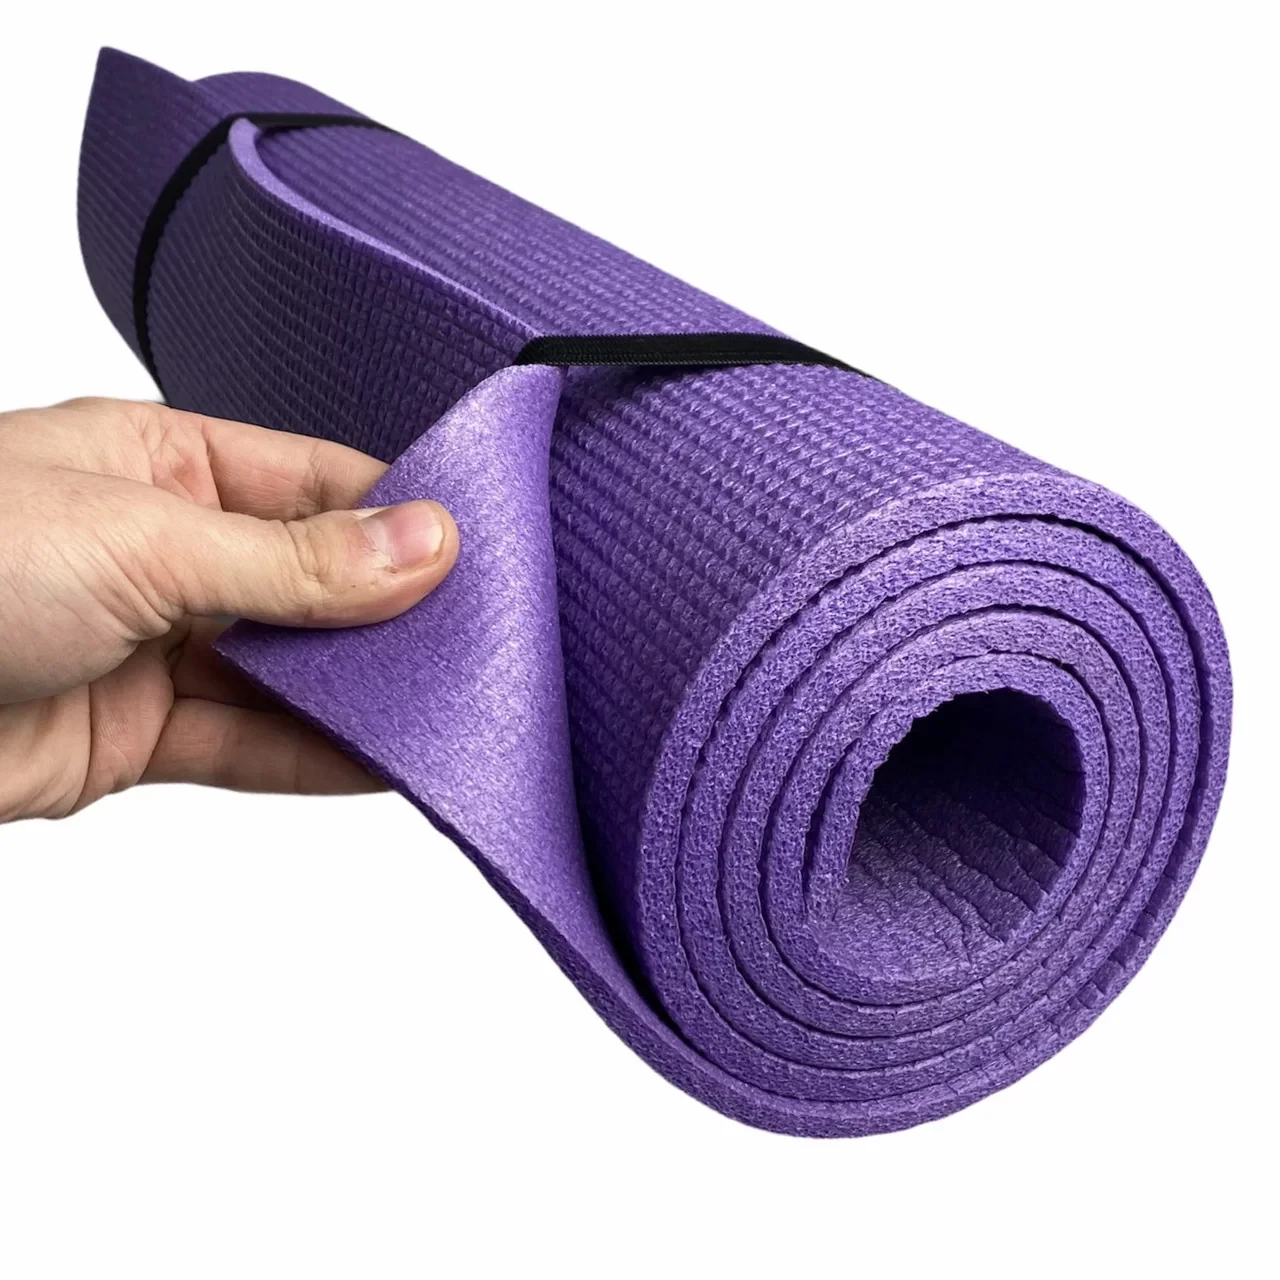 Коврик для йоги и гимнастики - (фиолетовый), размер 60x179см., толщина 8мм детальная фотка